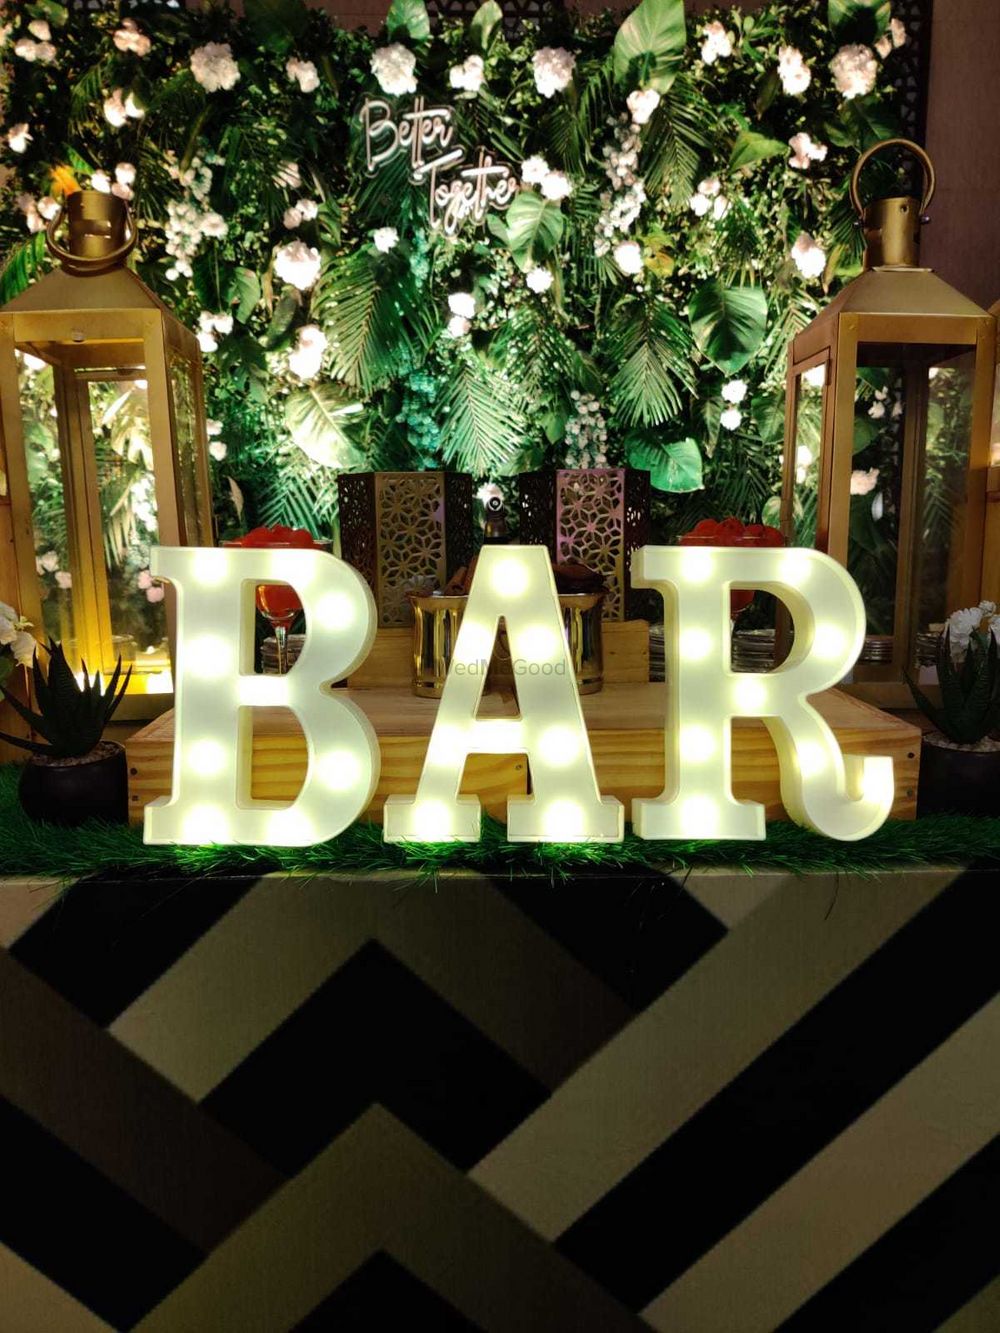 Photo From Reception Bar - By Bar Baraati